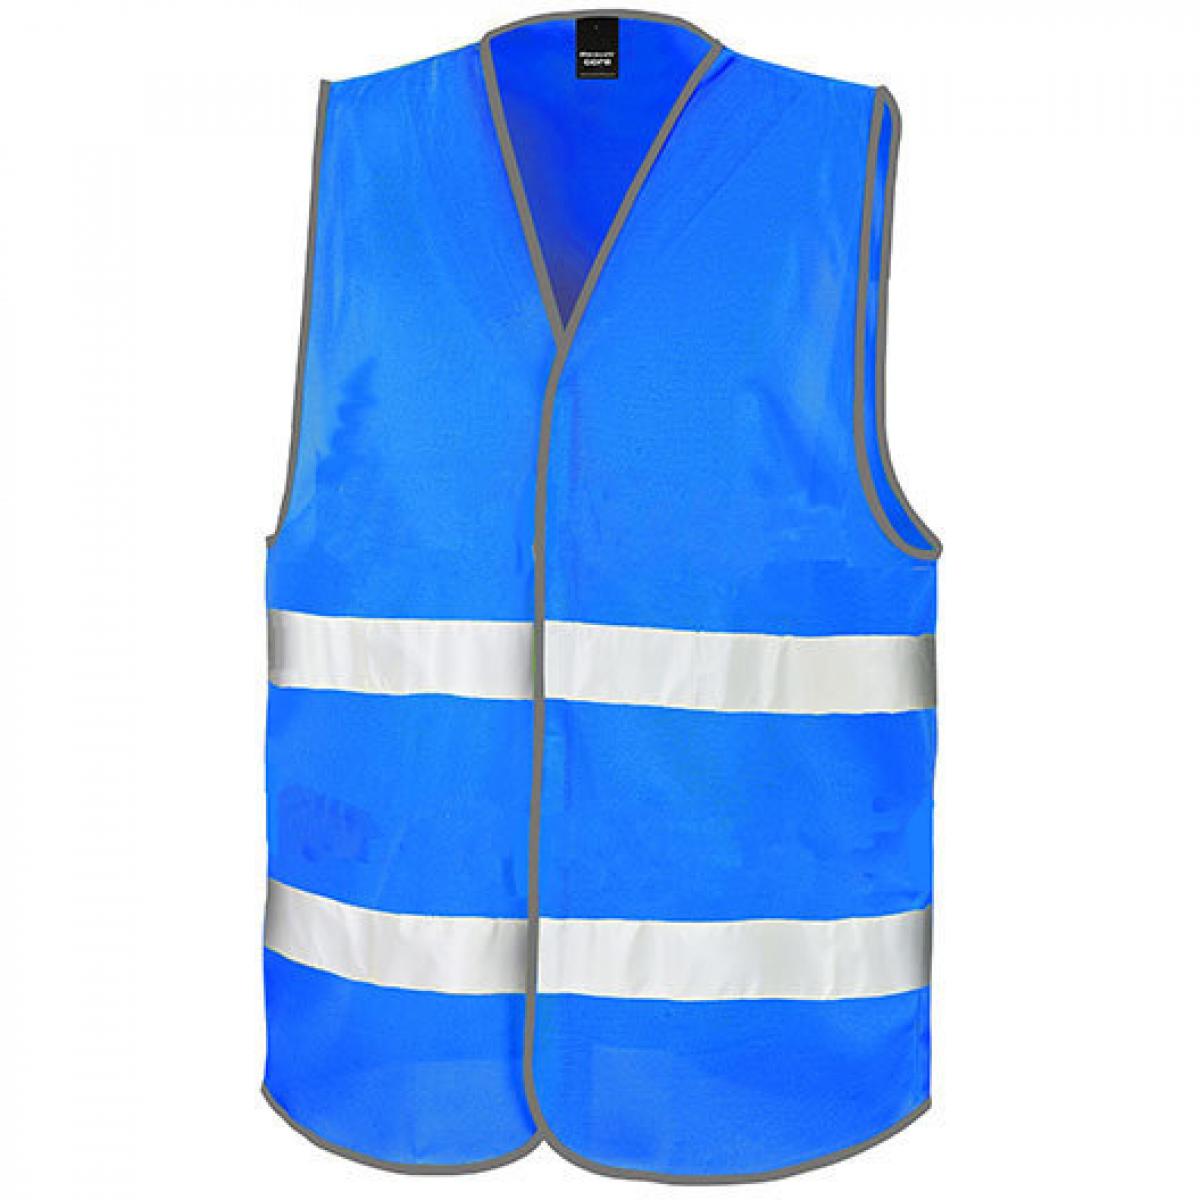 Hersteller: Result Core Herstellernummer: R200X Artikelbezeichnung: Motorist Safety Vest / ISOEN20471:2013, Klasse 2 Farbe: Royal